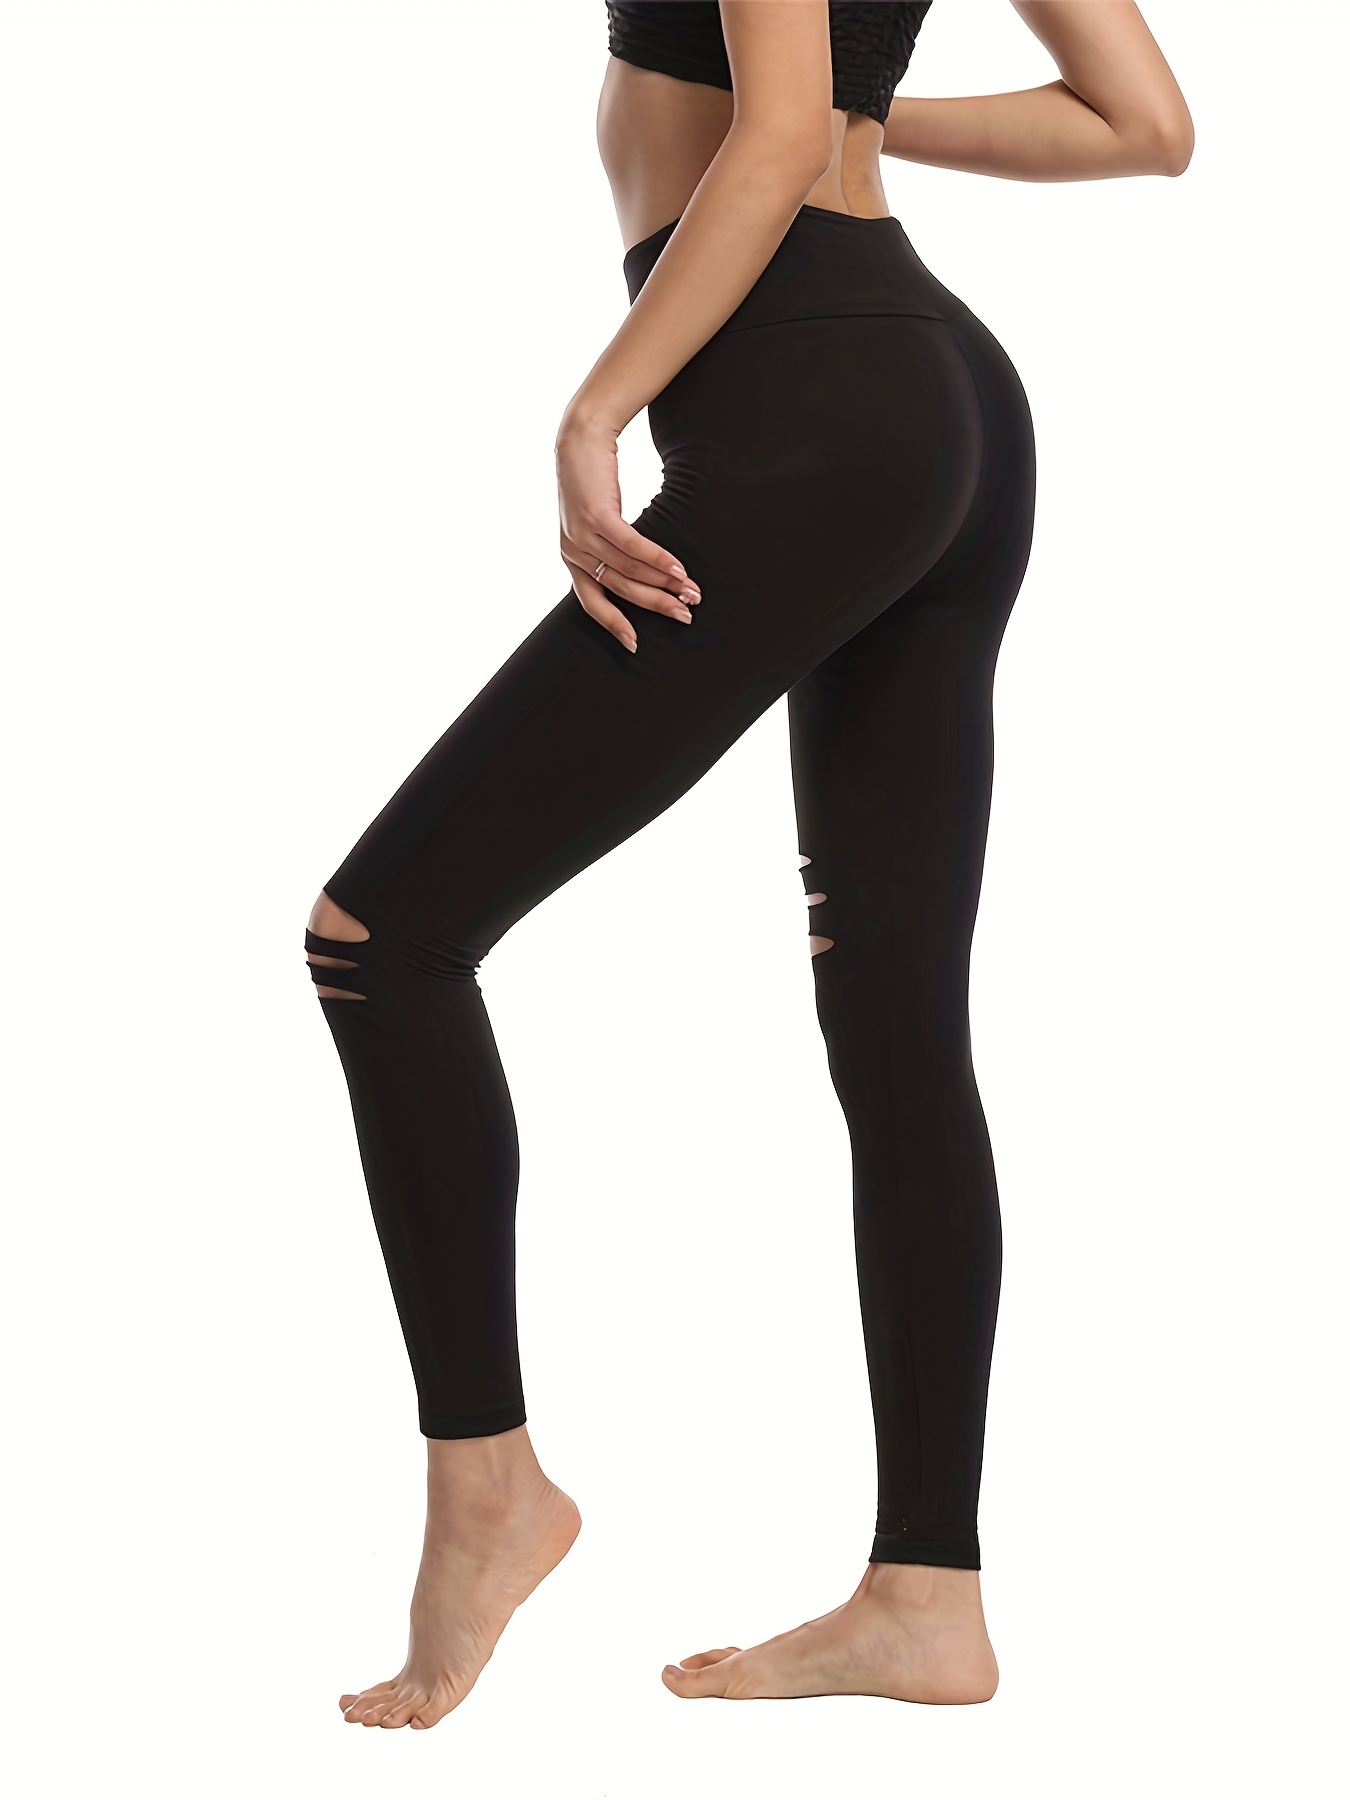 Beyond yoga high waist long leggings - Athletic apparel